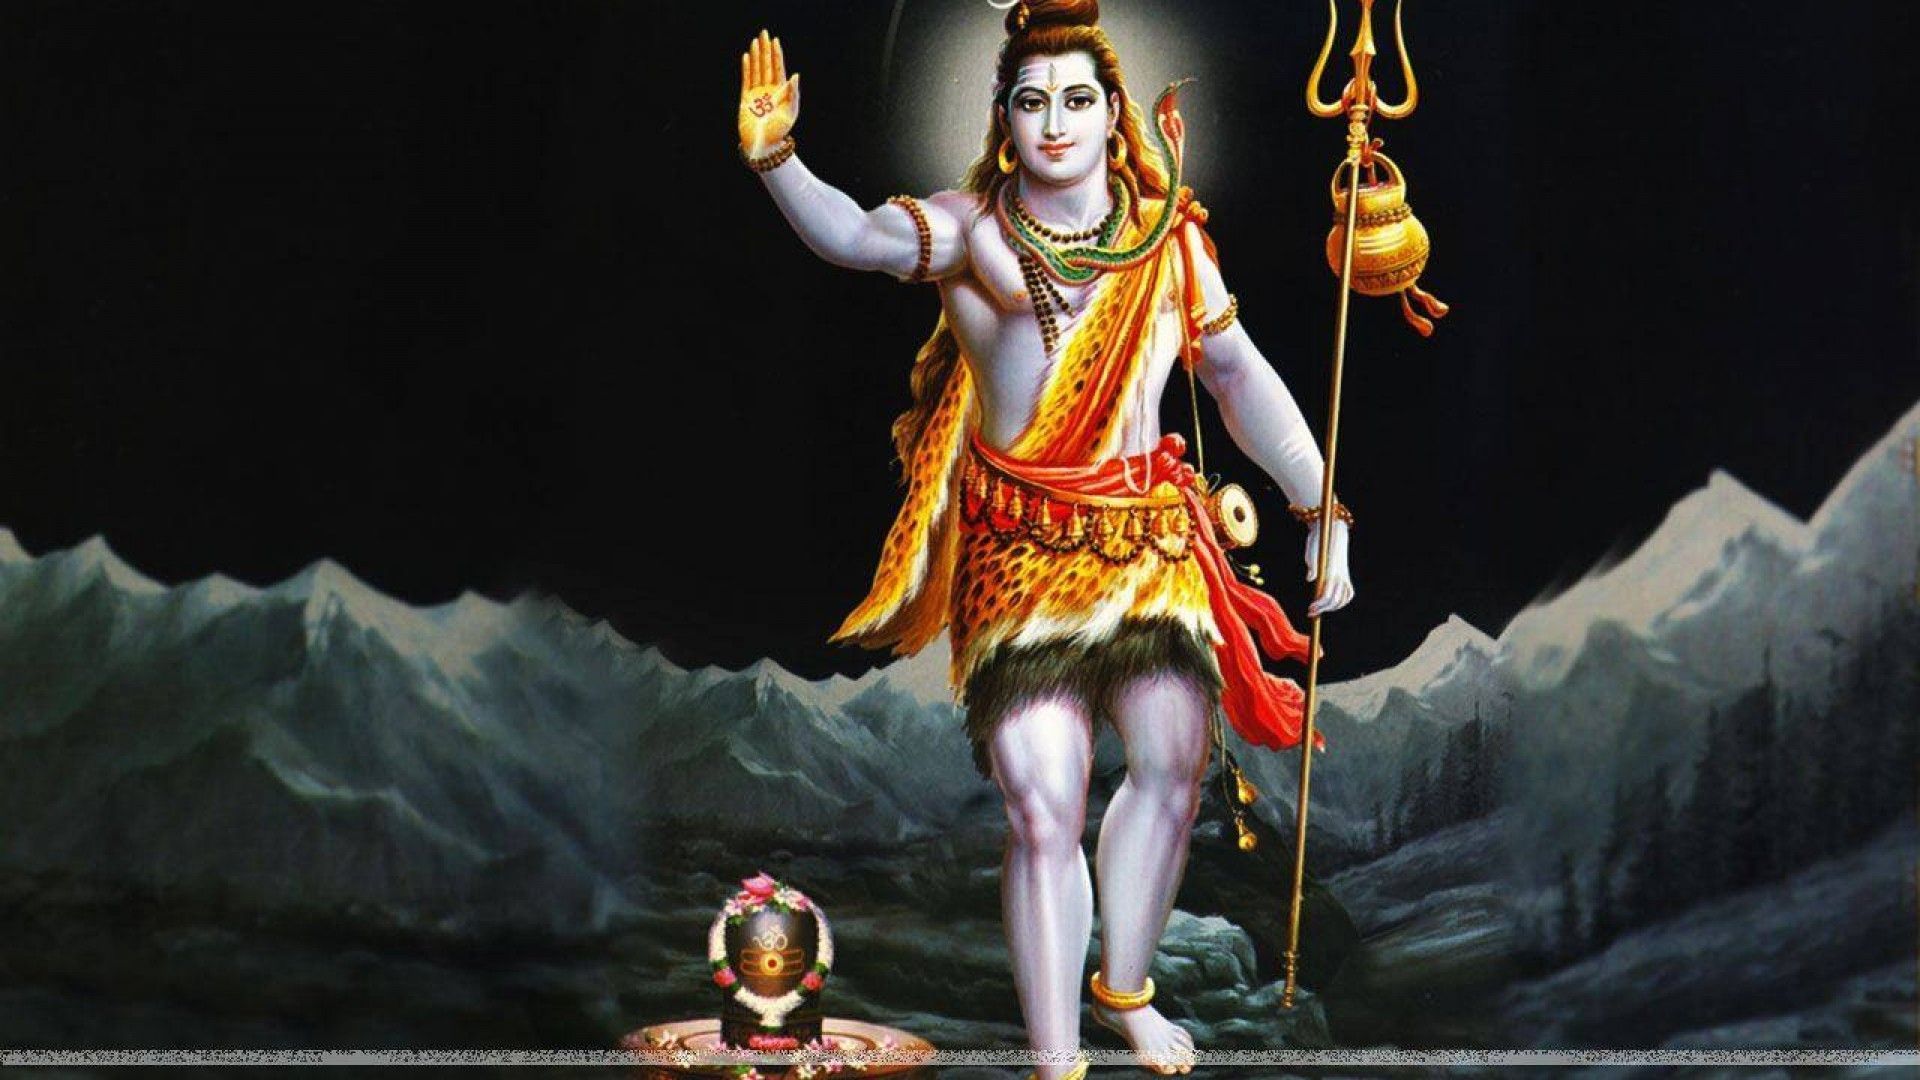 1920x1080 Lord Shiva Lord Shiva Hd Wallpaper Free Download